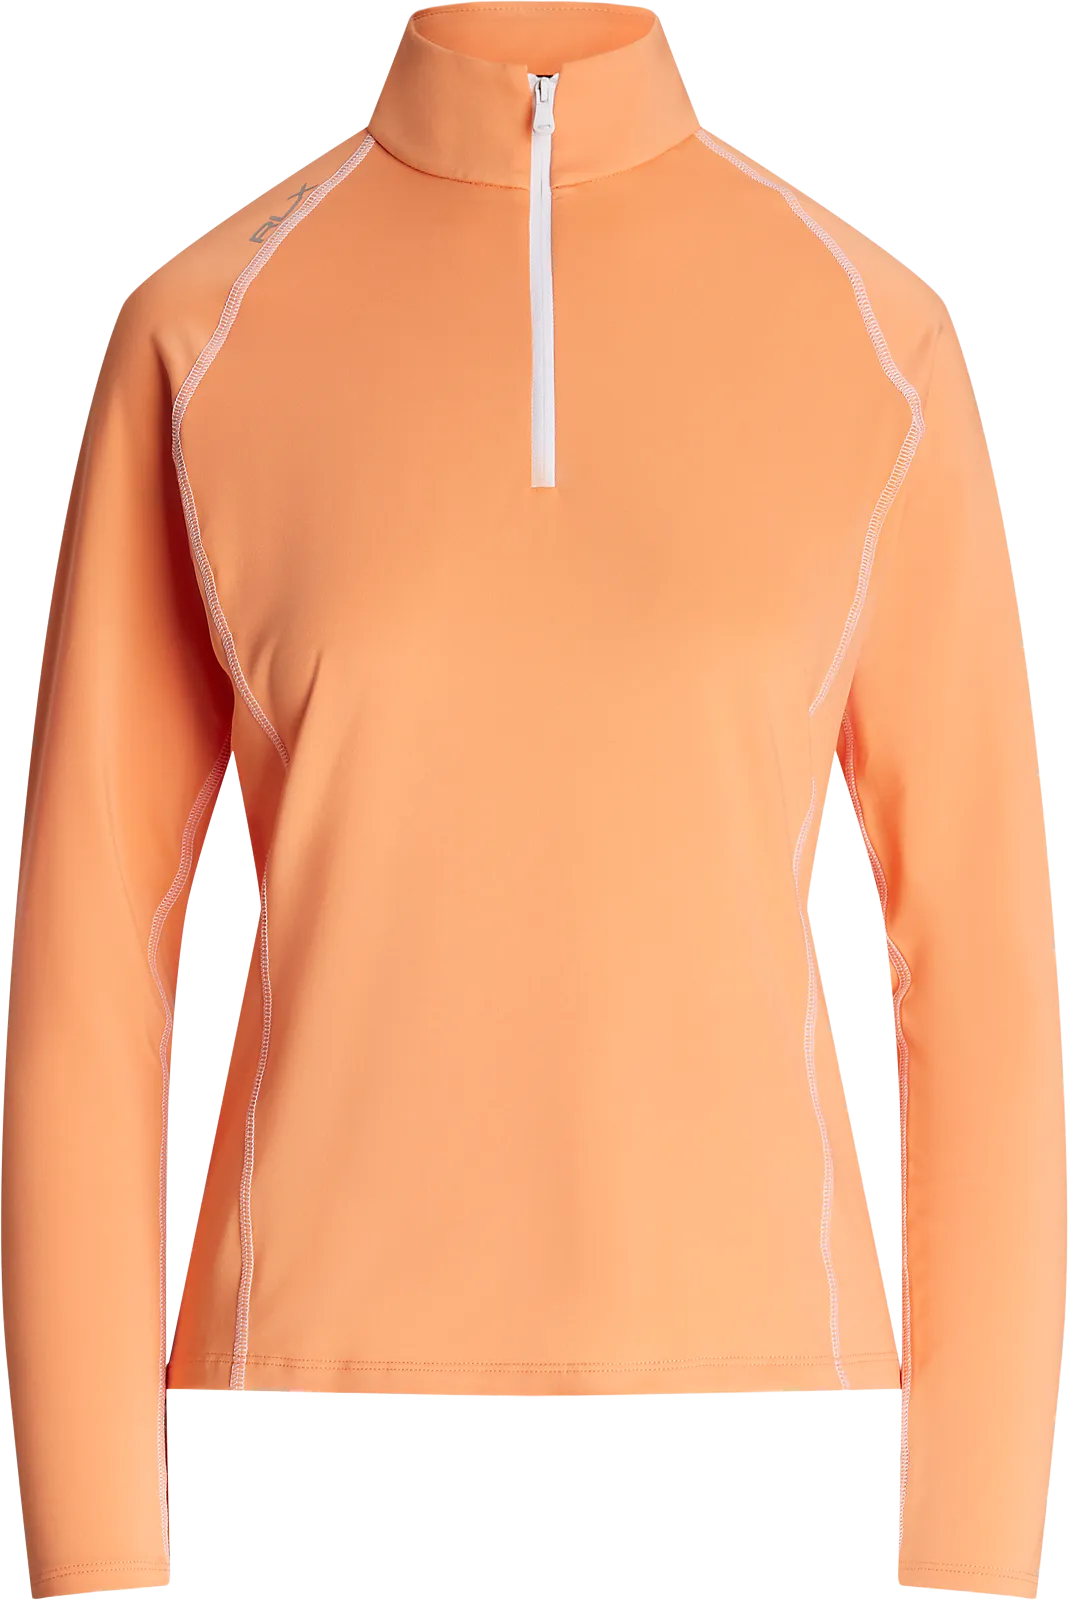 Ralph Lauren RLX Stretch Jersey Quarter-Zip Midlayer, orange/weiß